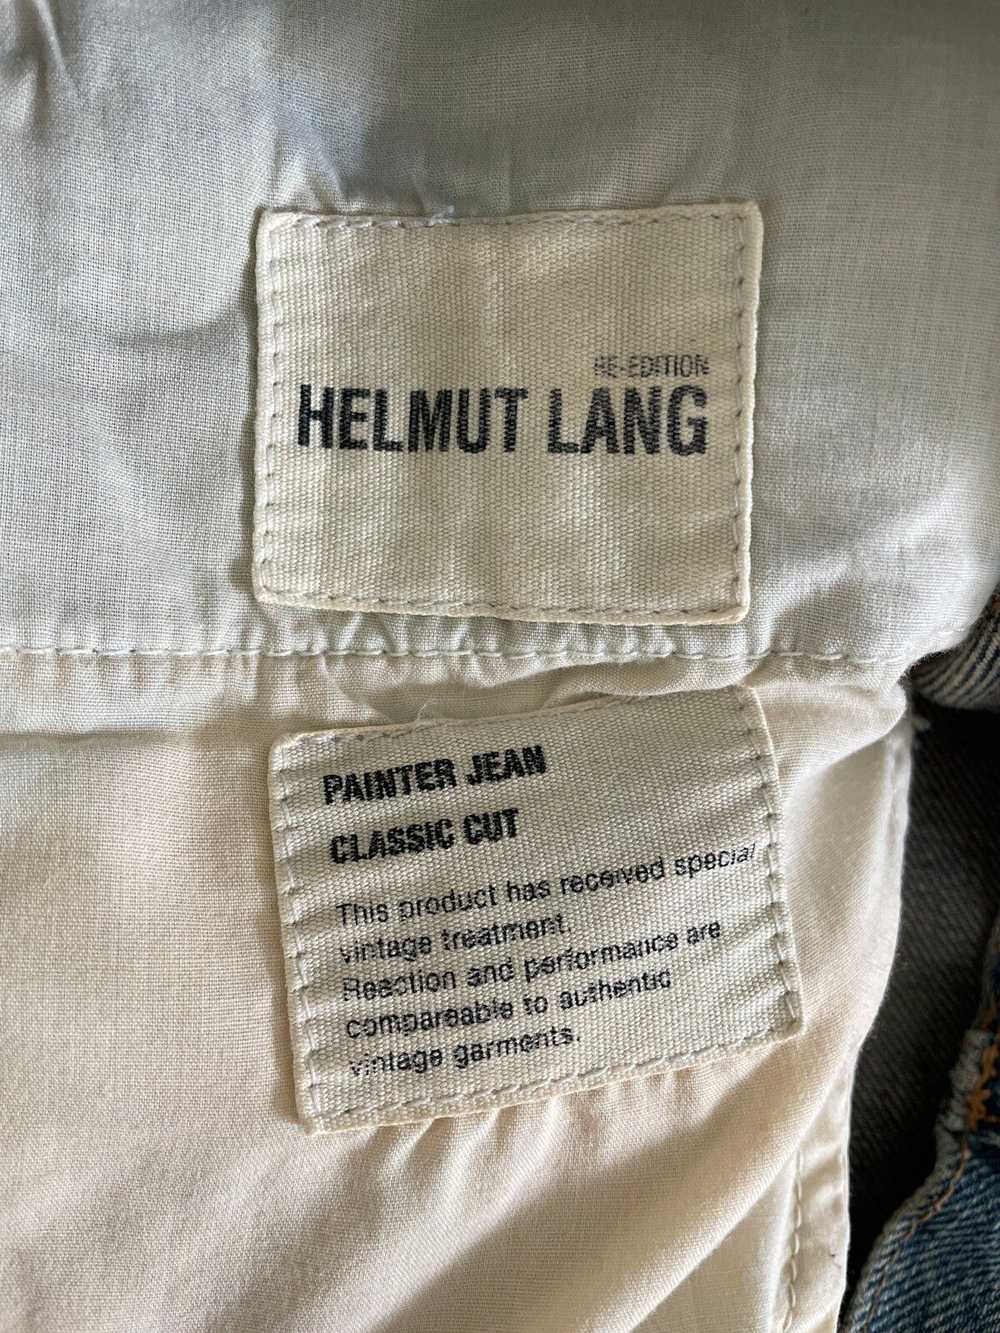 Helmut Lang Helmut Lang 1998 Painter Denim Jeans - image 6